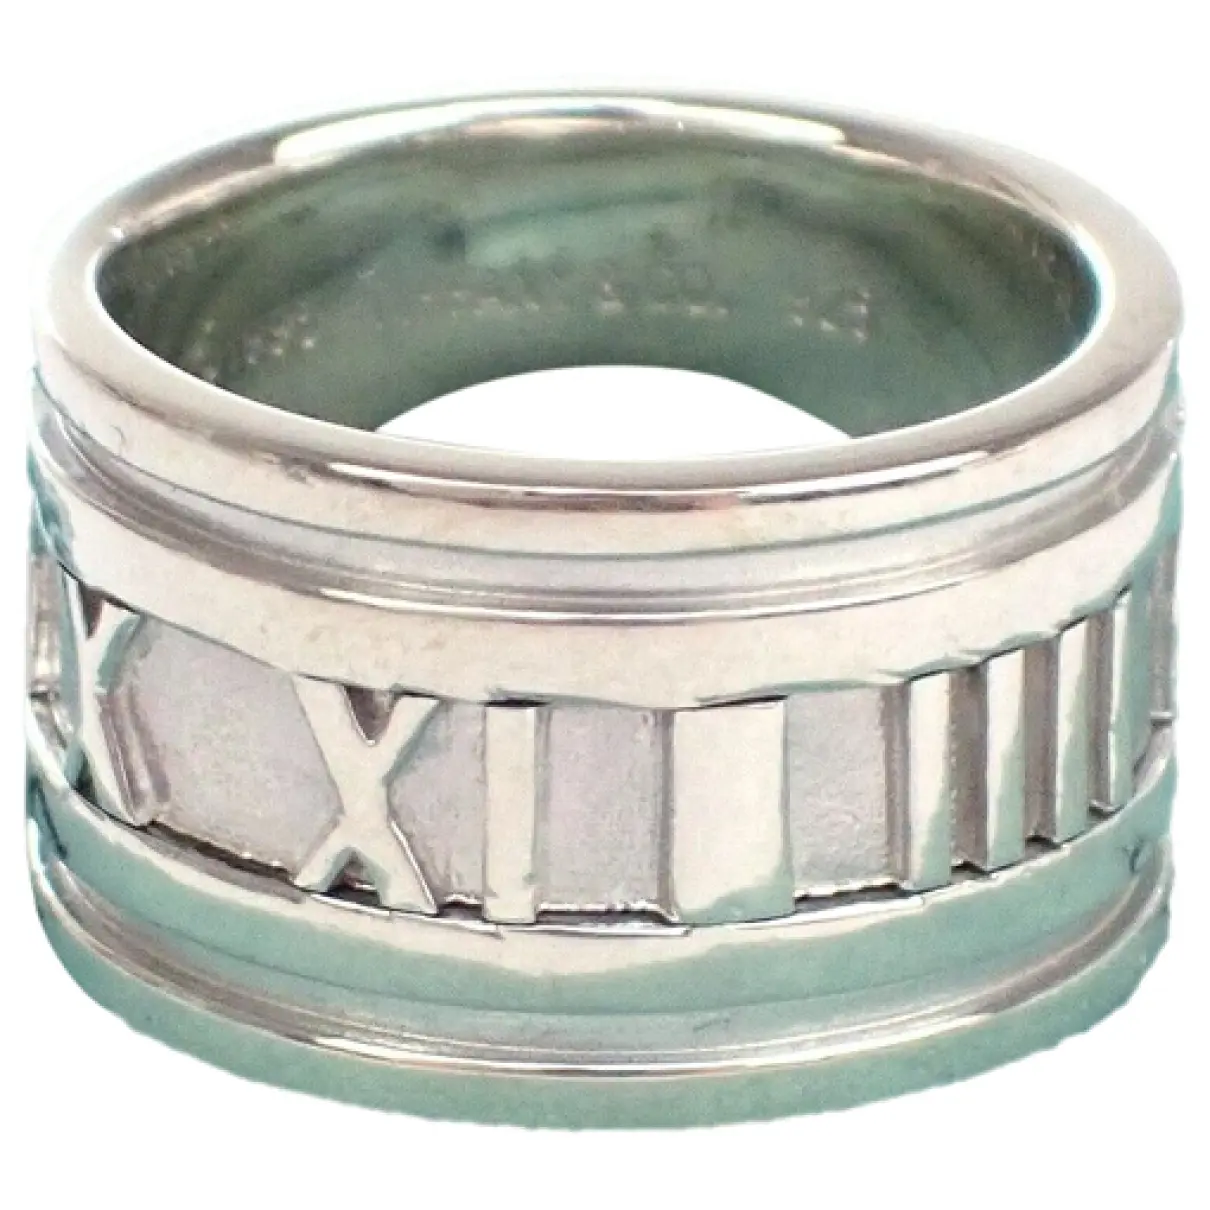 Atlas silver ring